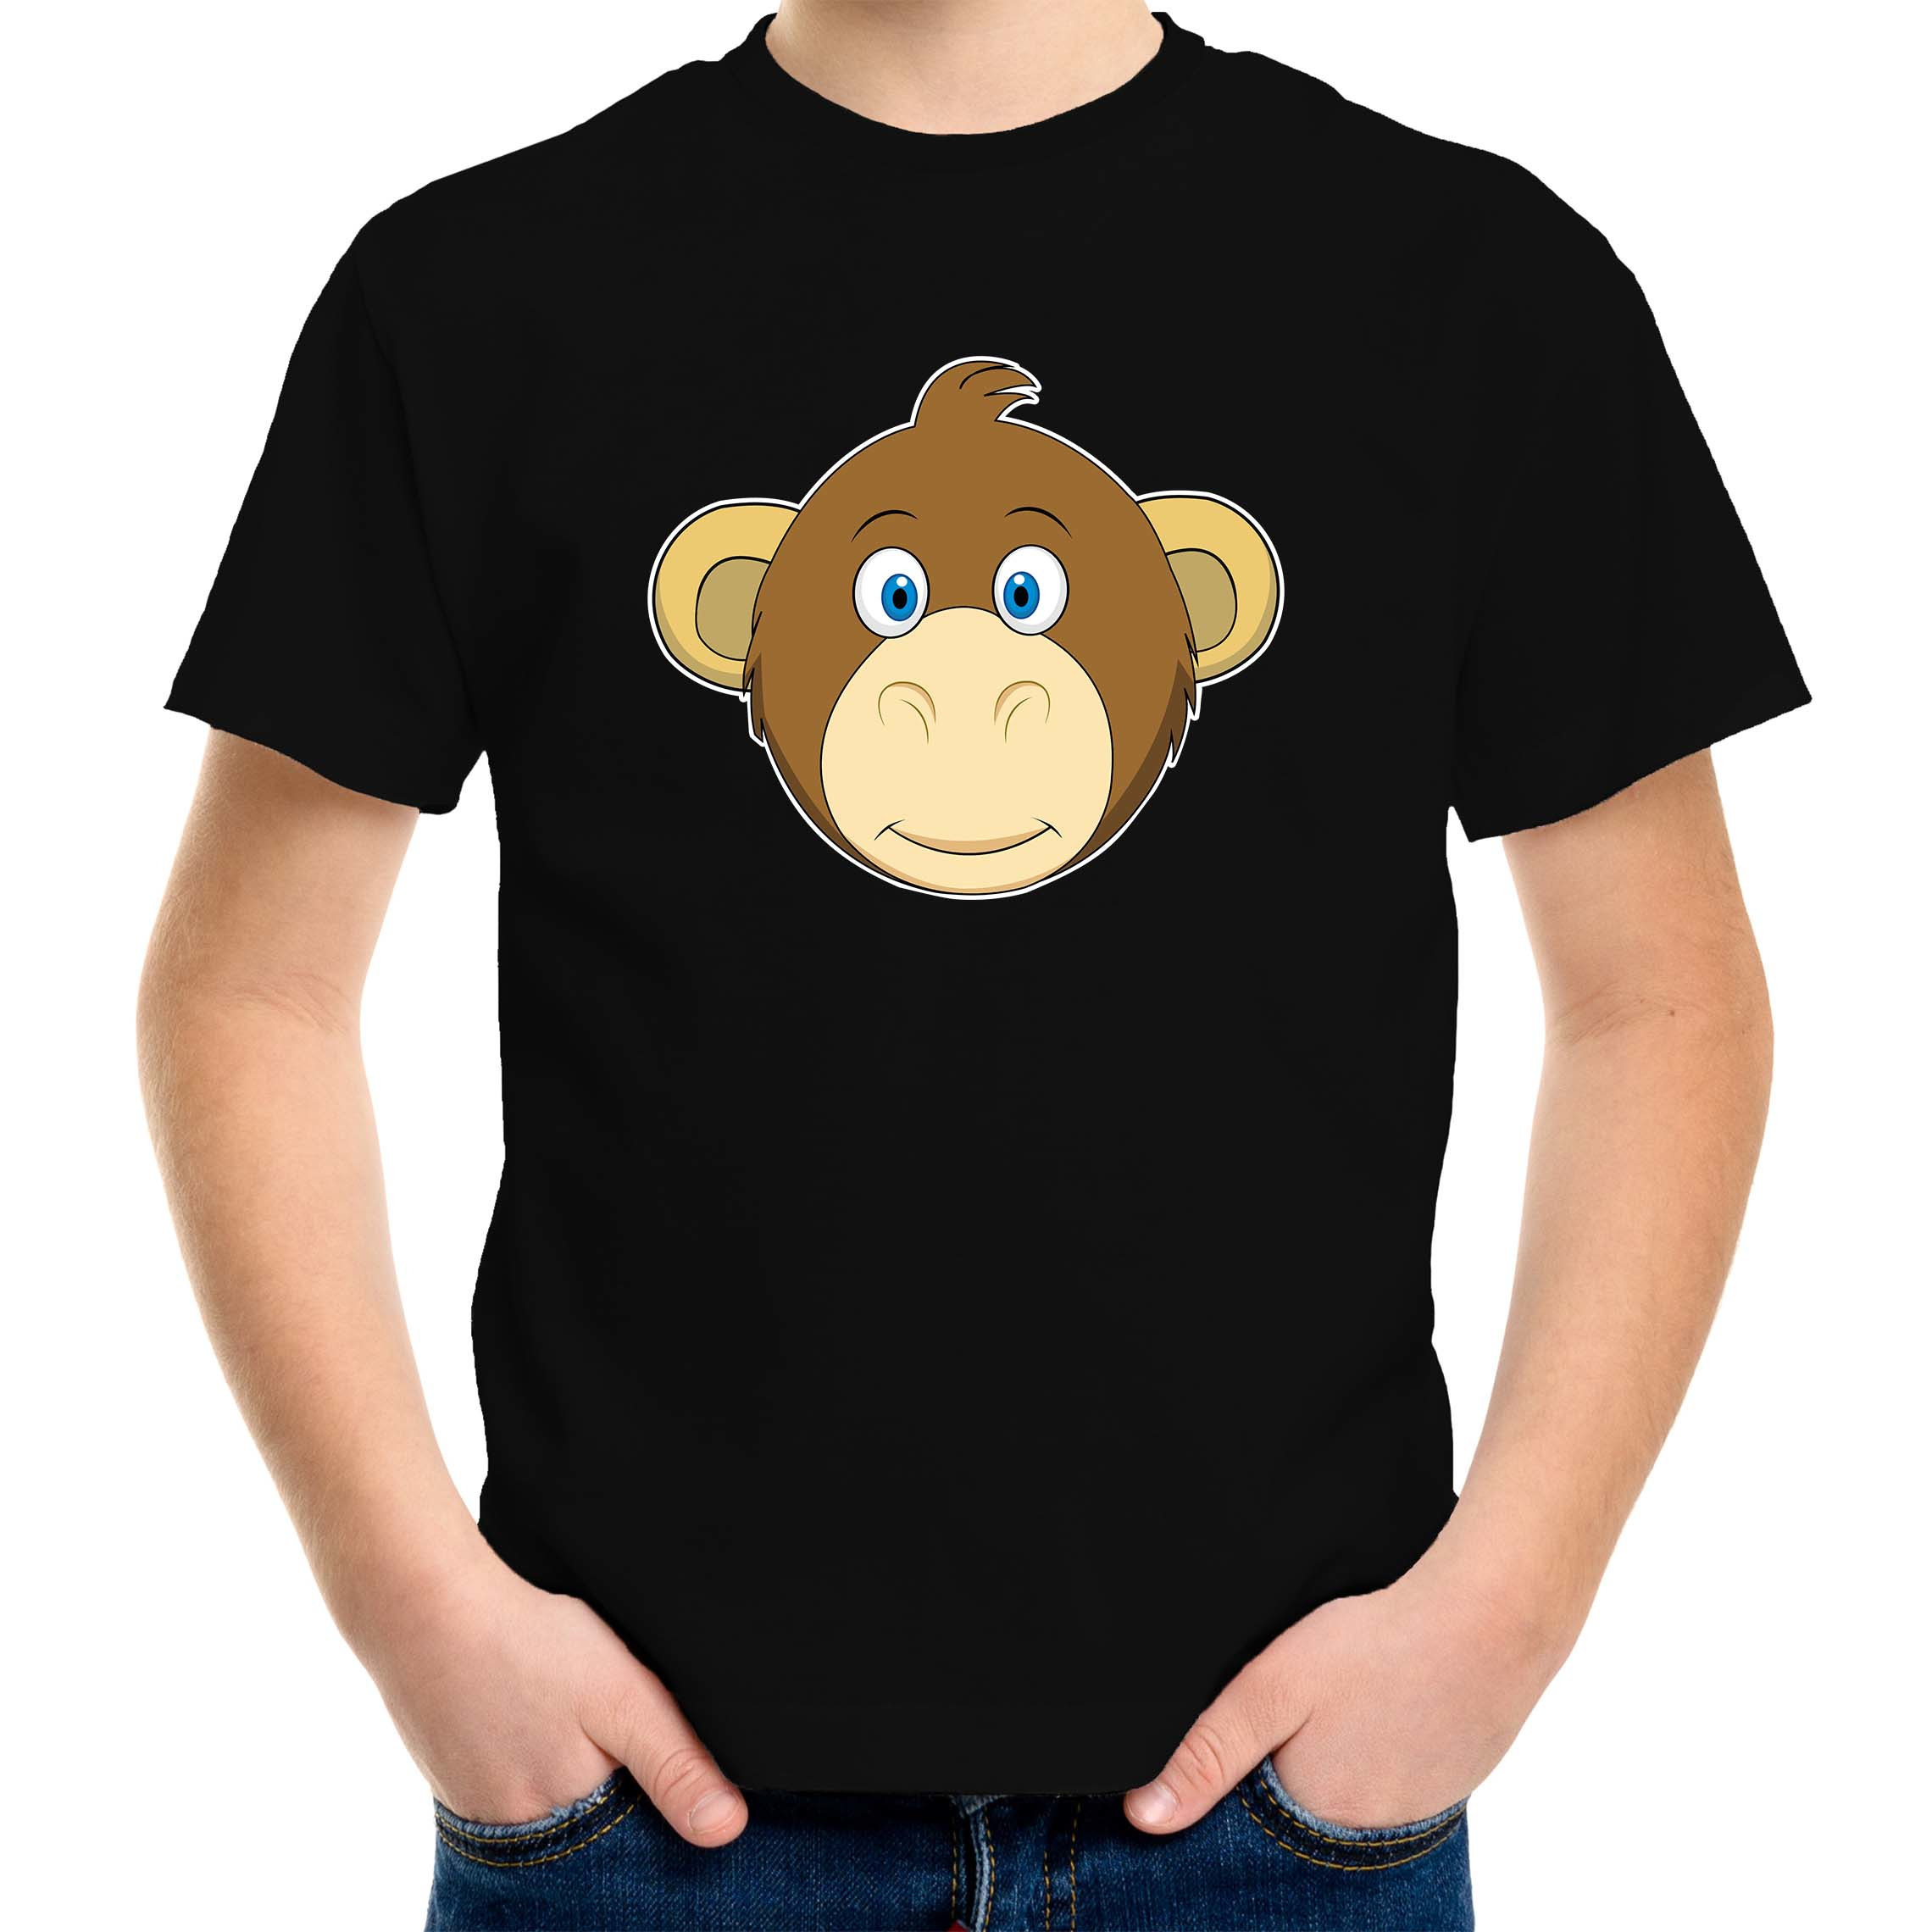 Cartoon aap t-shirt zwart voor jongens en meisjes - Cartoon dieren t-shirts kinderen